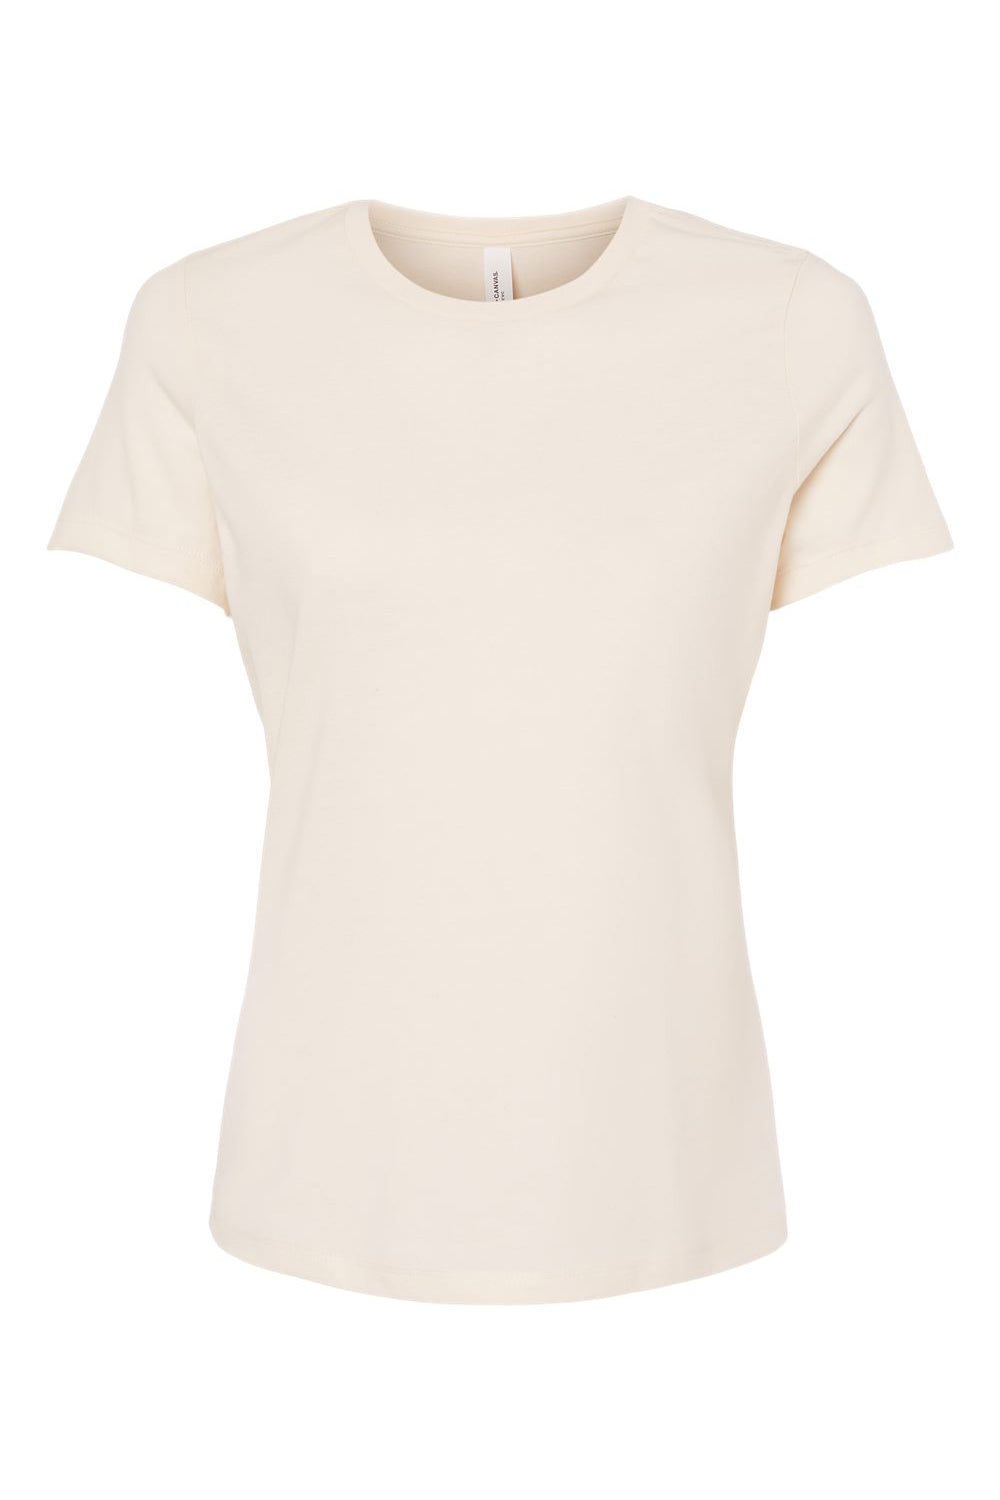 Bella + Canvas BC6400CVC/6400CVC Womens CVC Short Sleeve Crewneck T-Shirt Heather Natural Flat Front